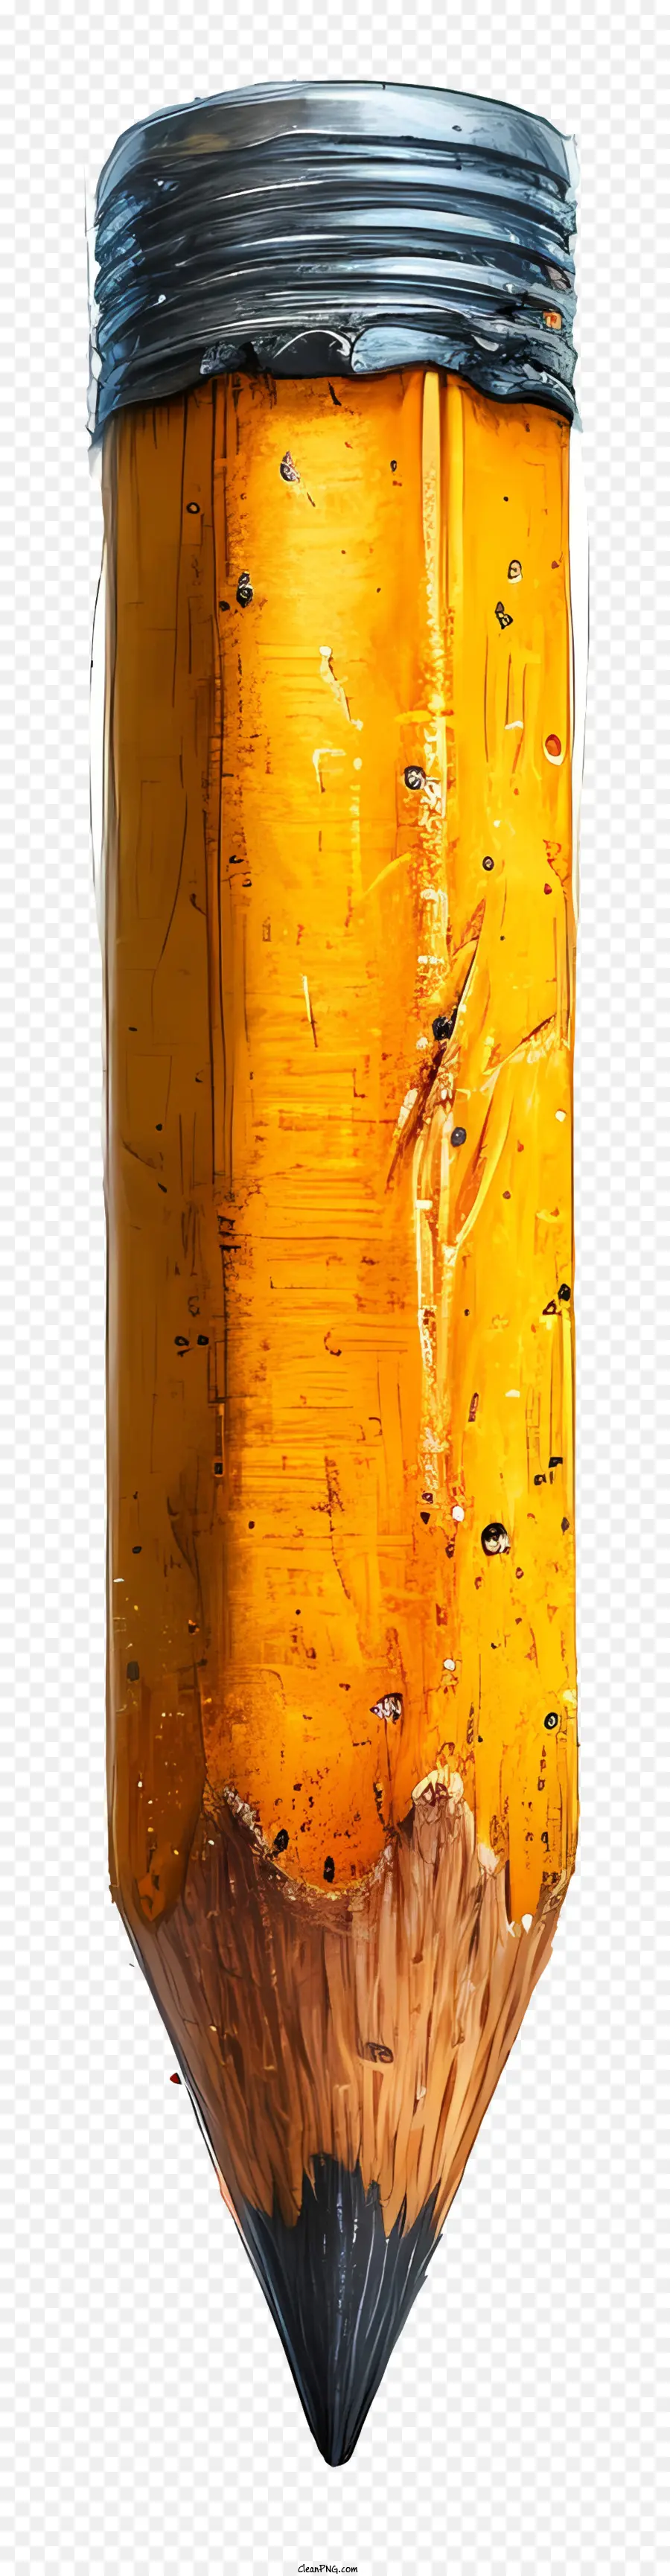 Bleistiftstift Holzstift gelber Bleistiftstift mit Loch - Holzstift mit gelber Farbe und Kratzern